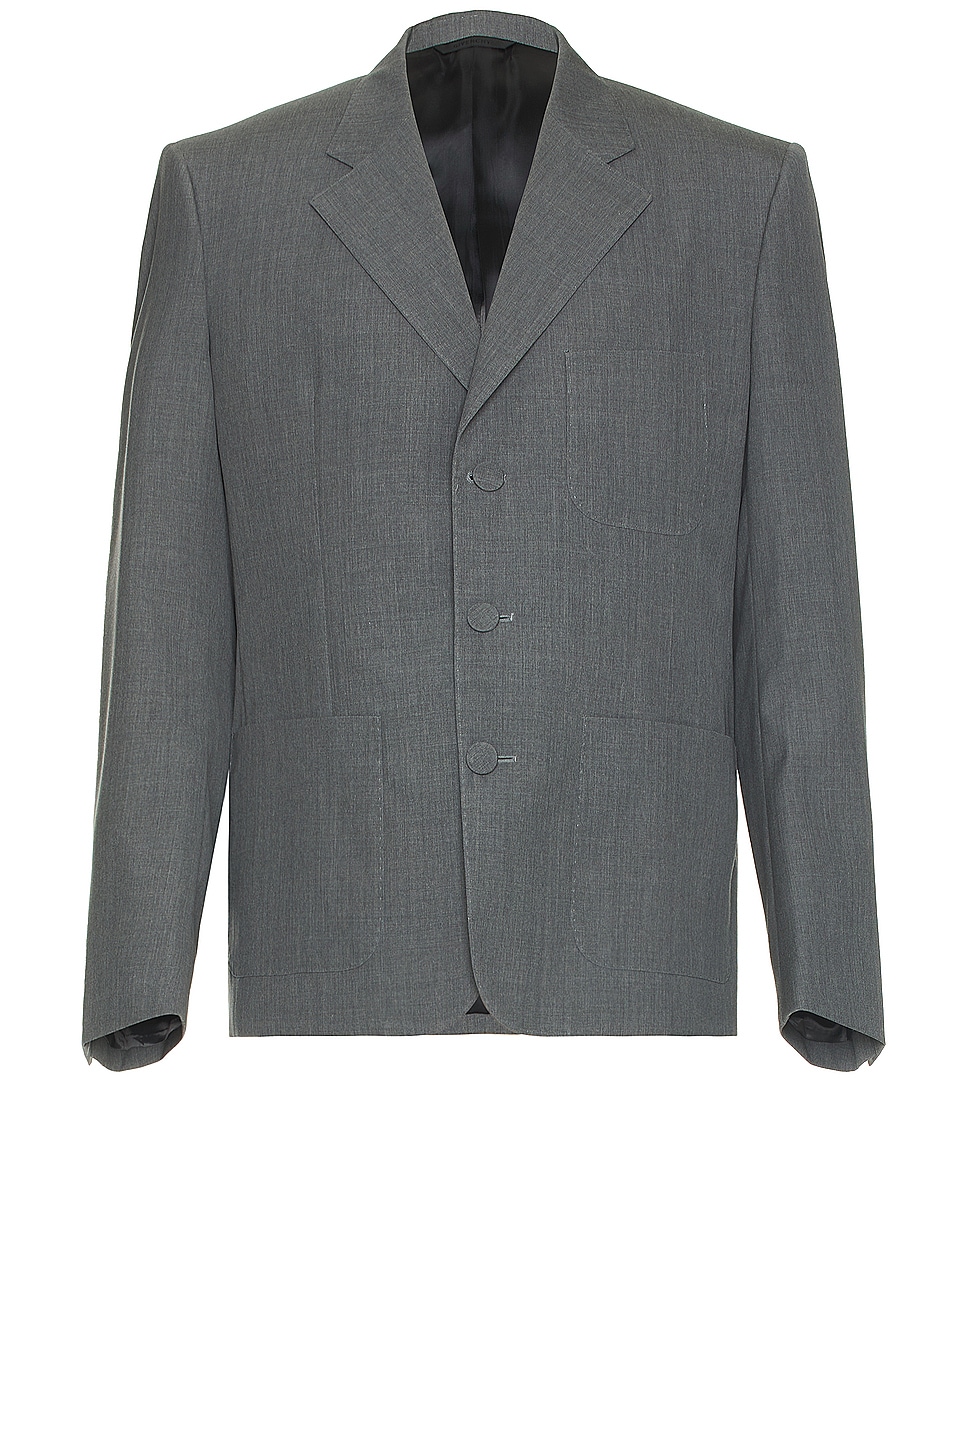 Image 1 of Givenchy Schoolboy Jacket in Medium Grey